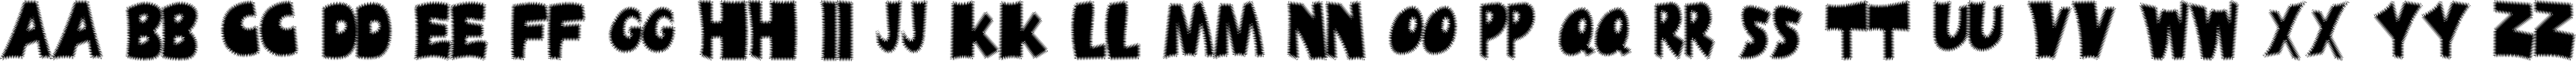 Пример написания английского алфавита шрифтом Ufrayd